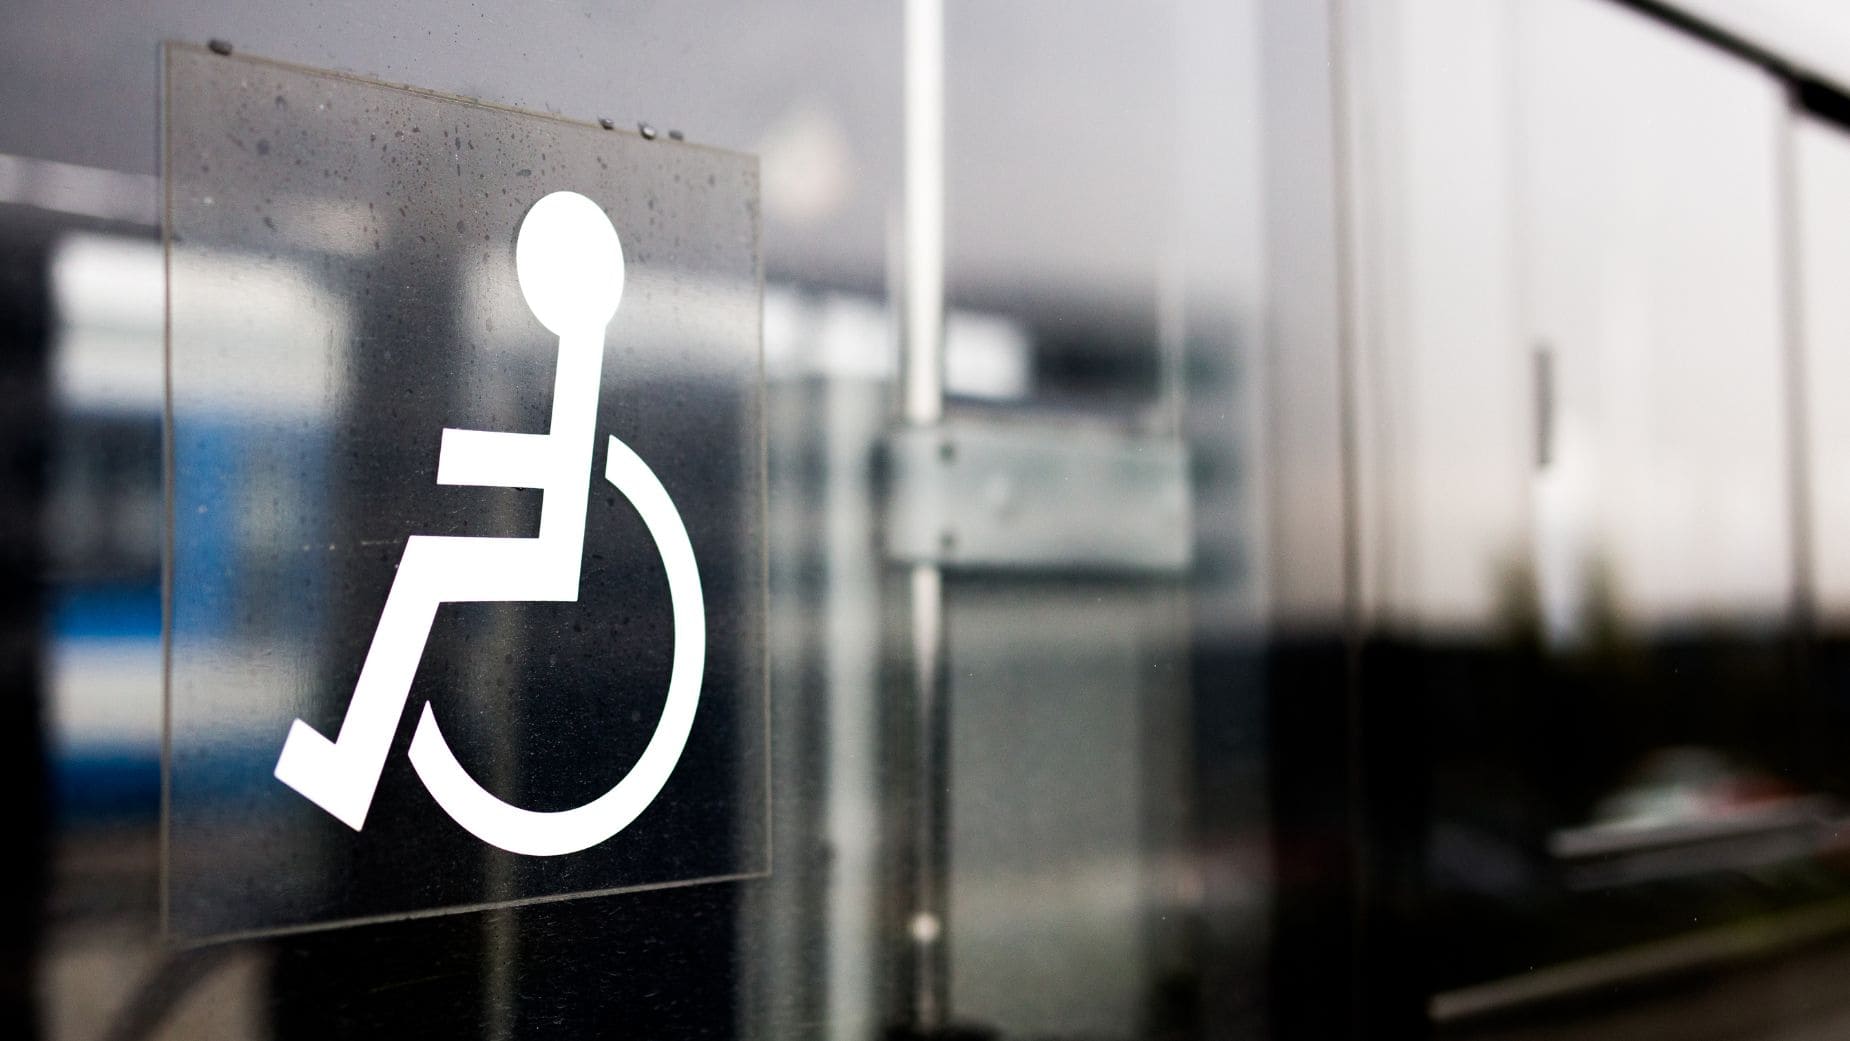 8 nuevas ayudas económicas para las personas con discapacidad